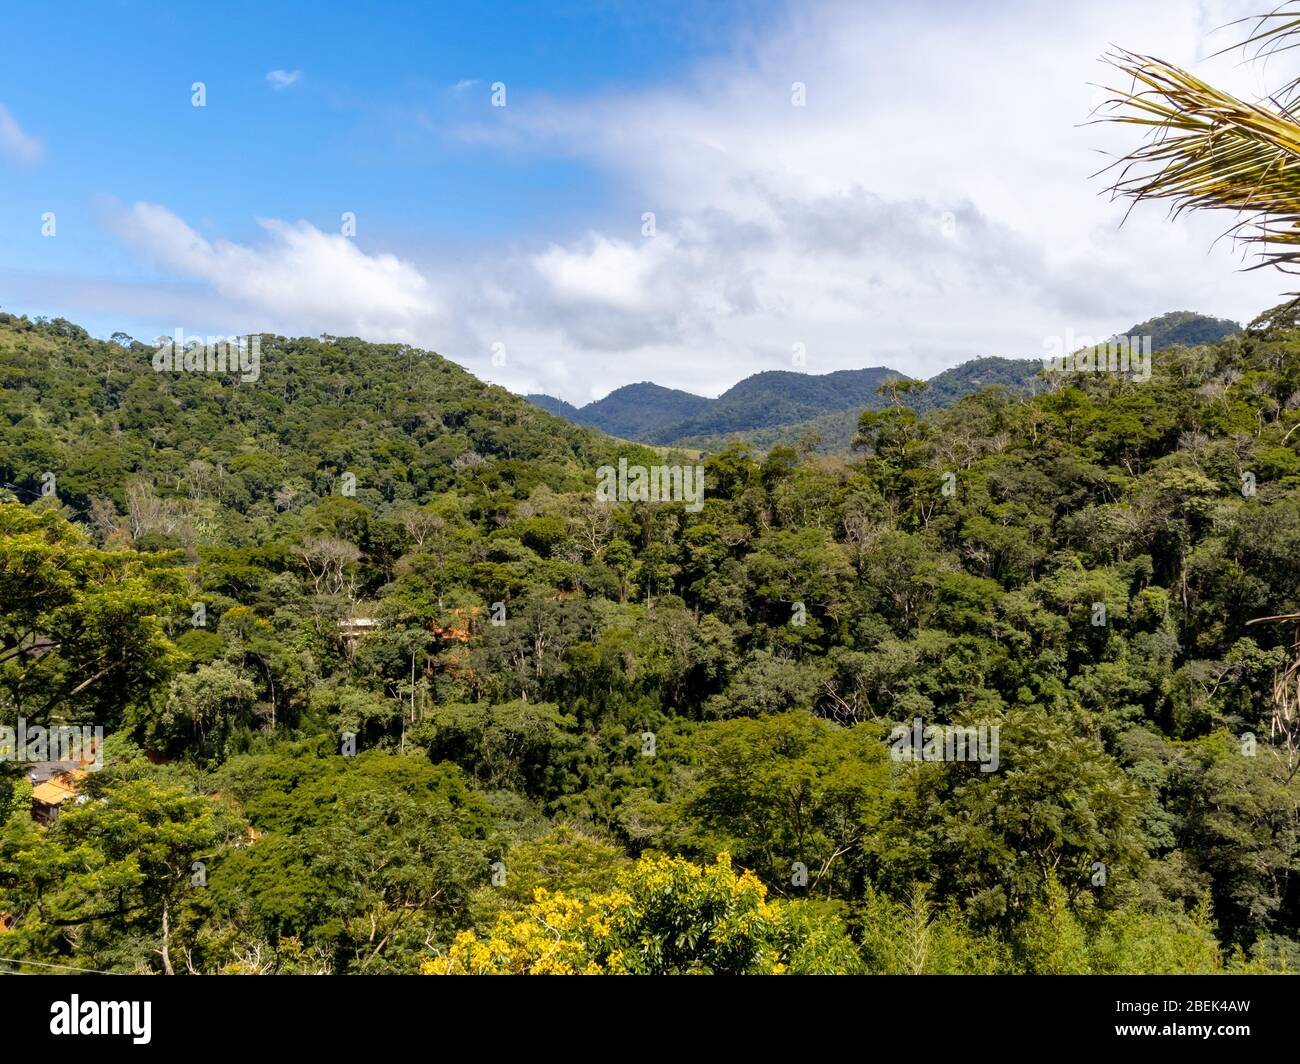 Vista generale della collina coperta dalla vegetazione della foresta atlantica, Areal, Rio de Janeiro, Brasile Foto Stock